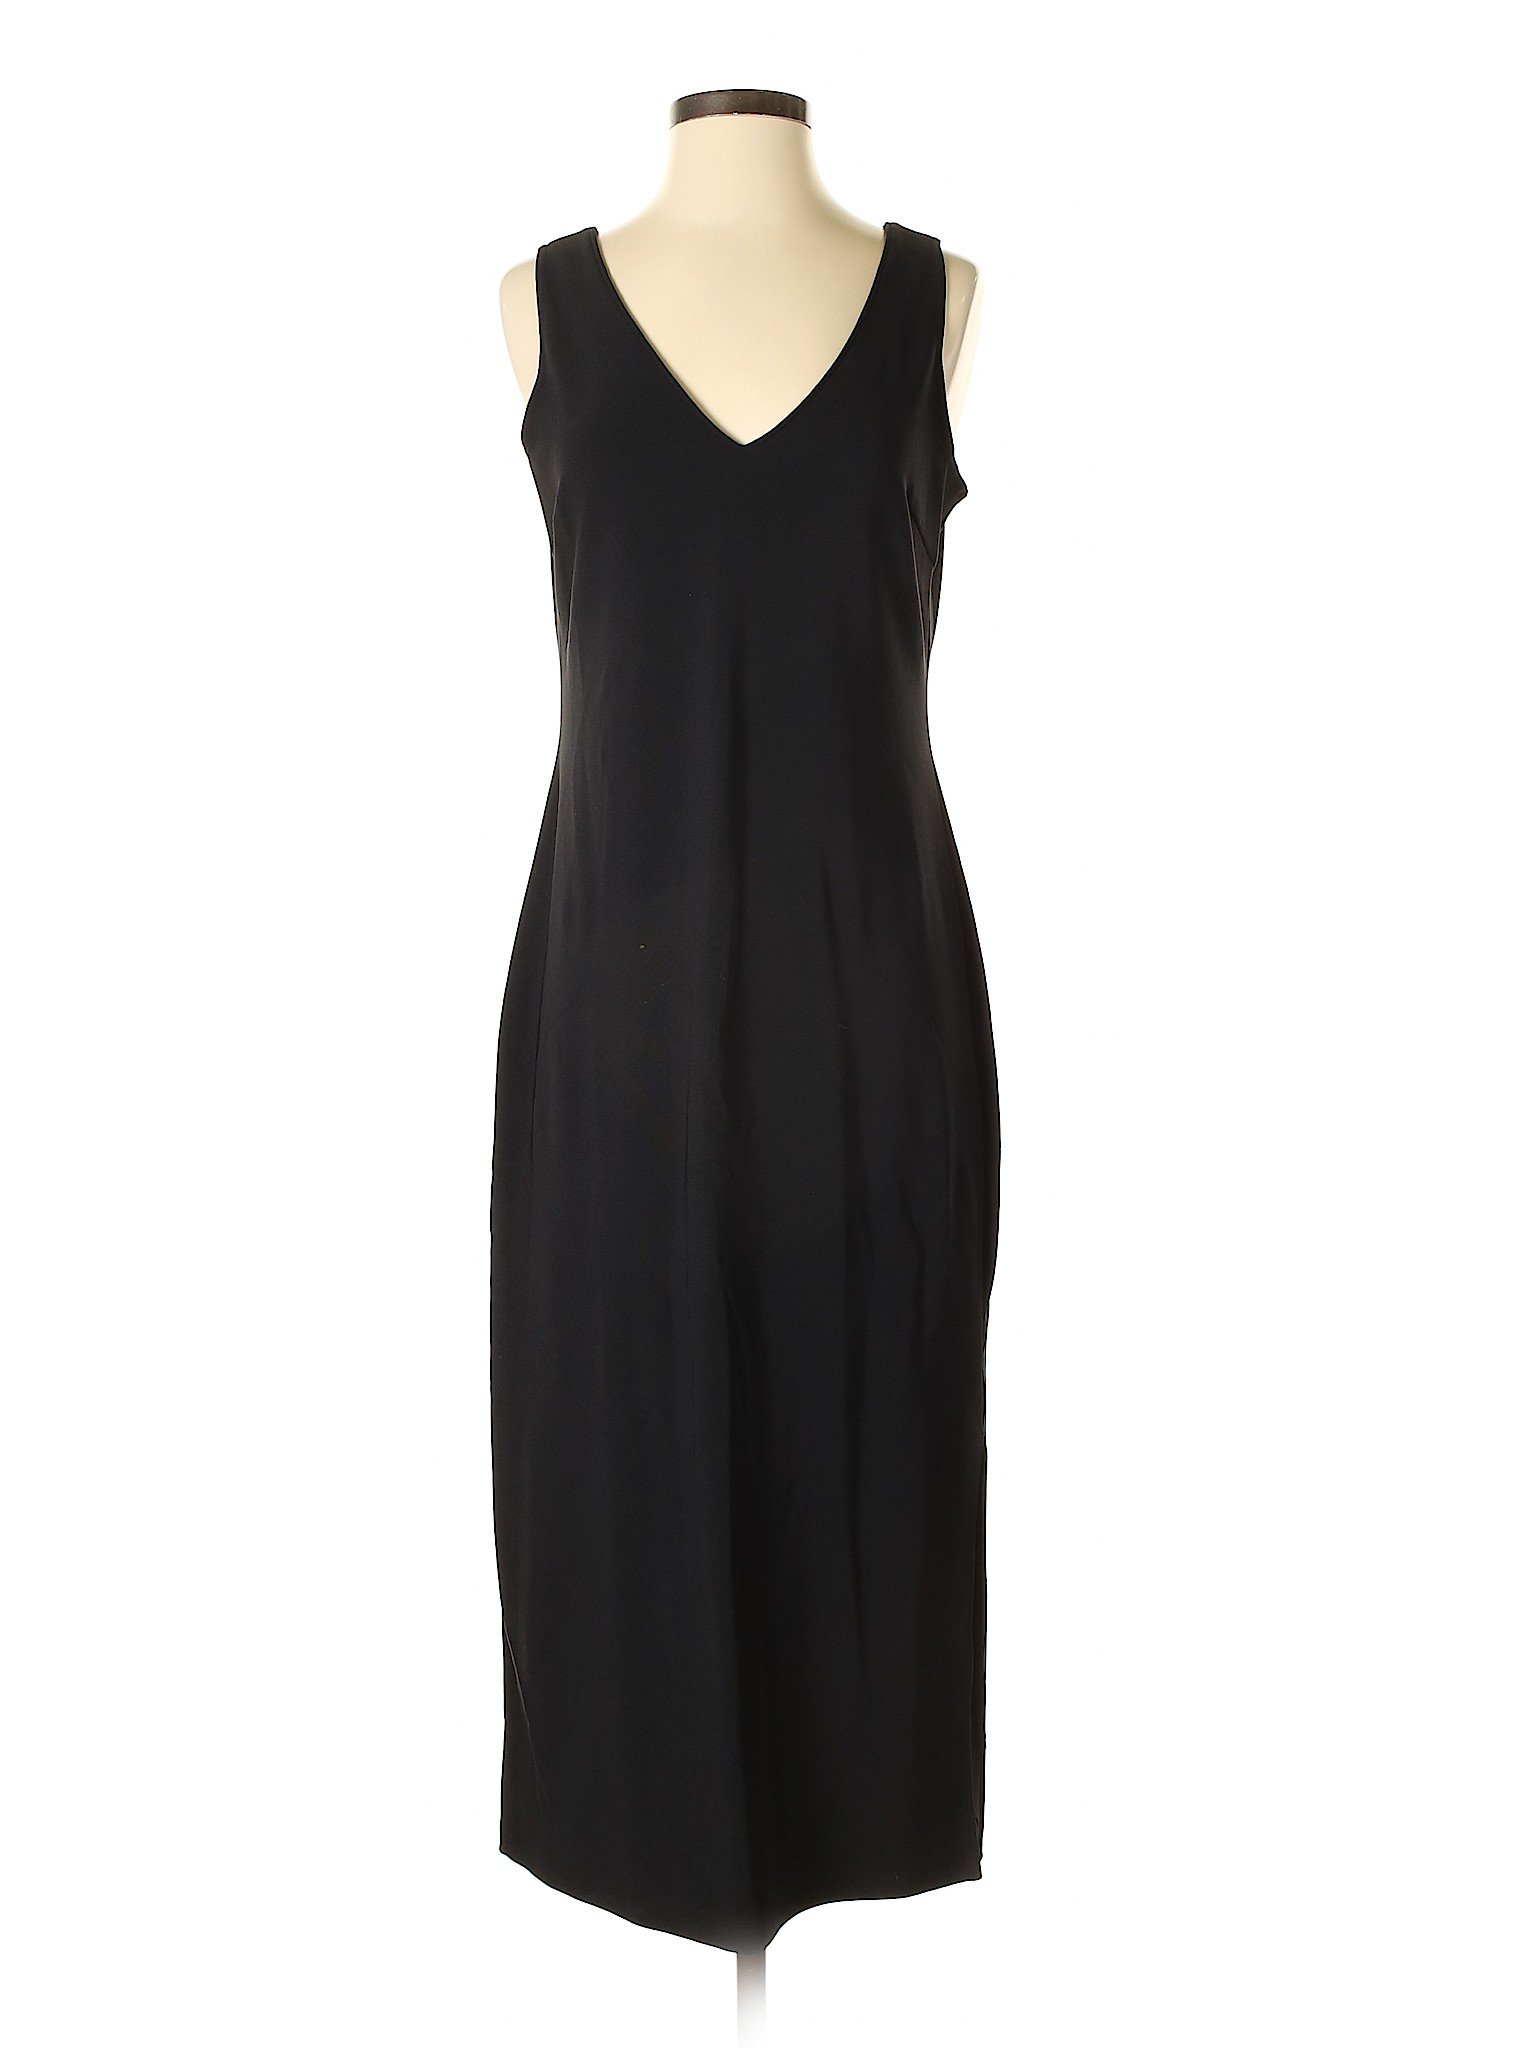 Boston Proper Women Black Cocktail Dress Sm | eBay